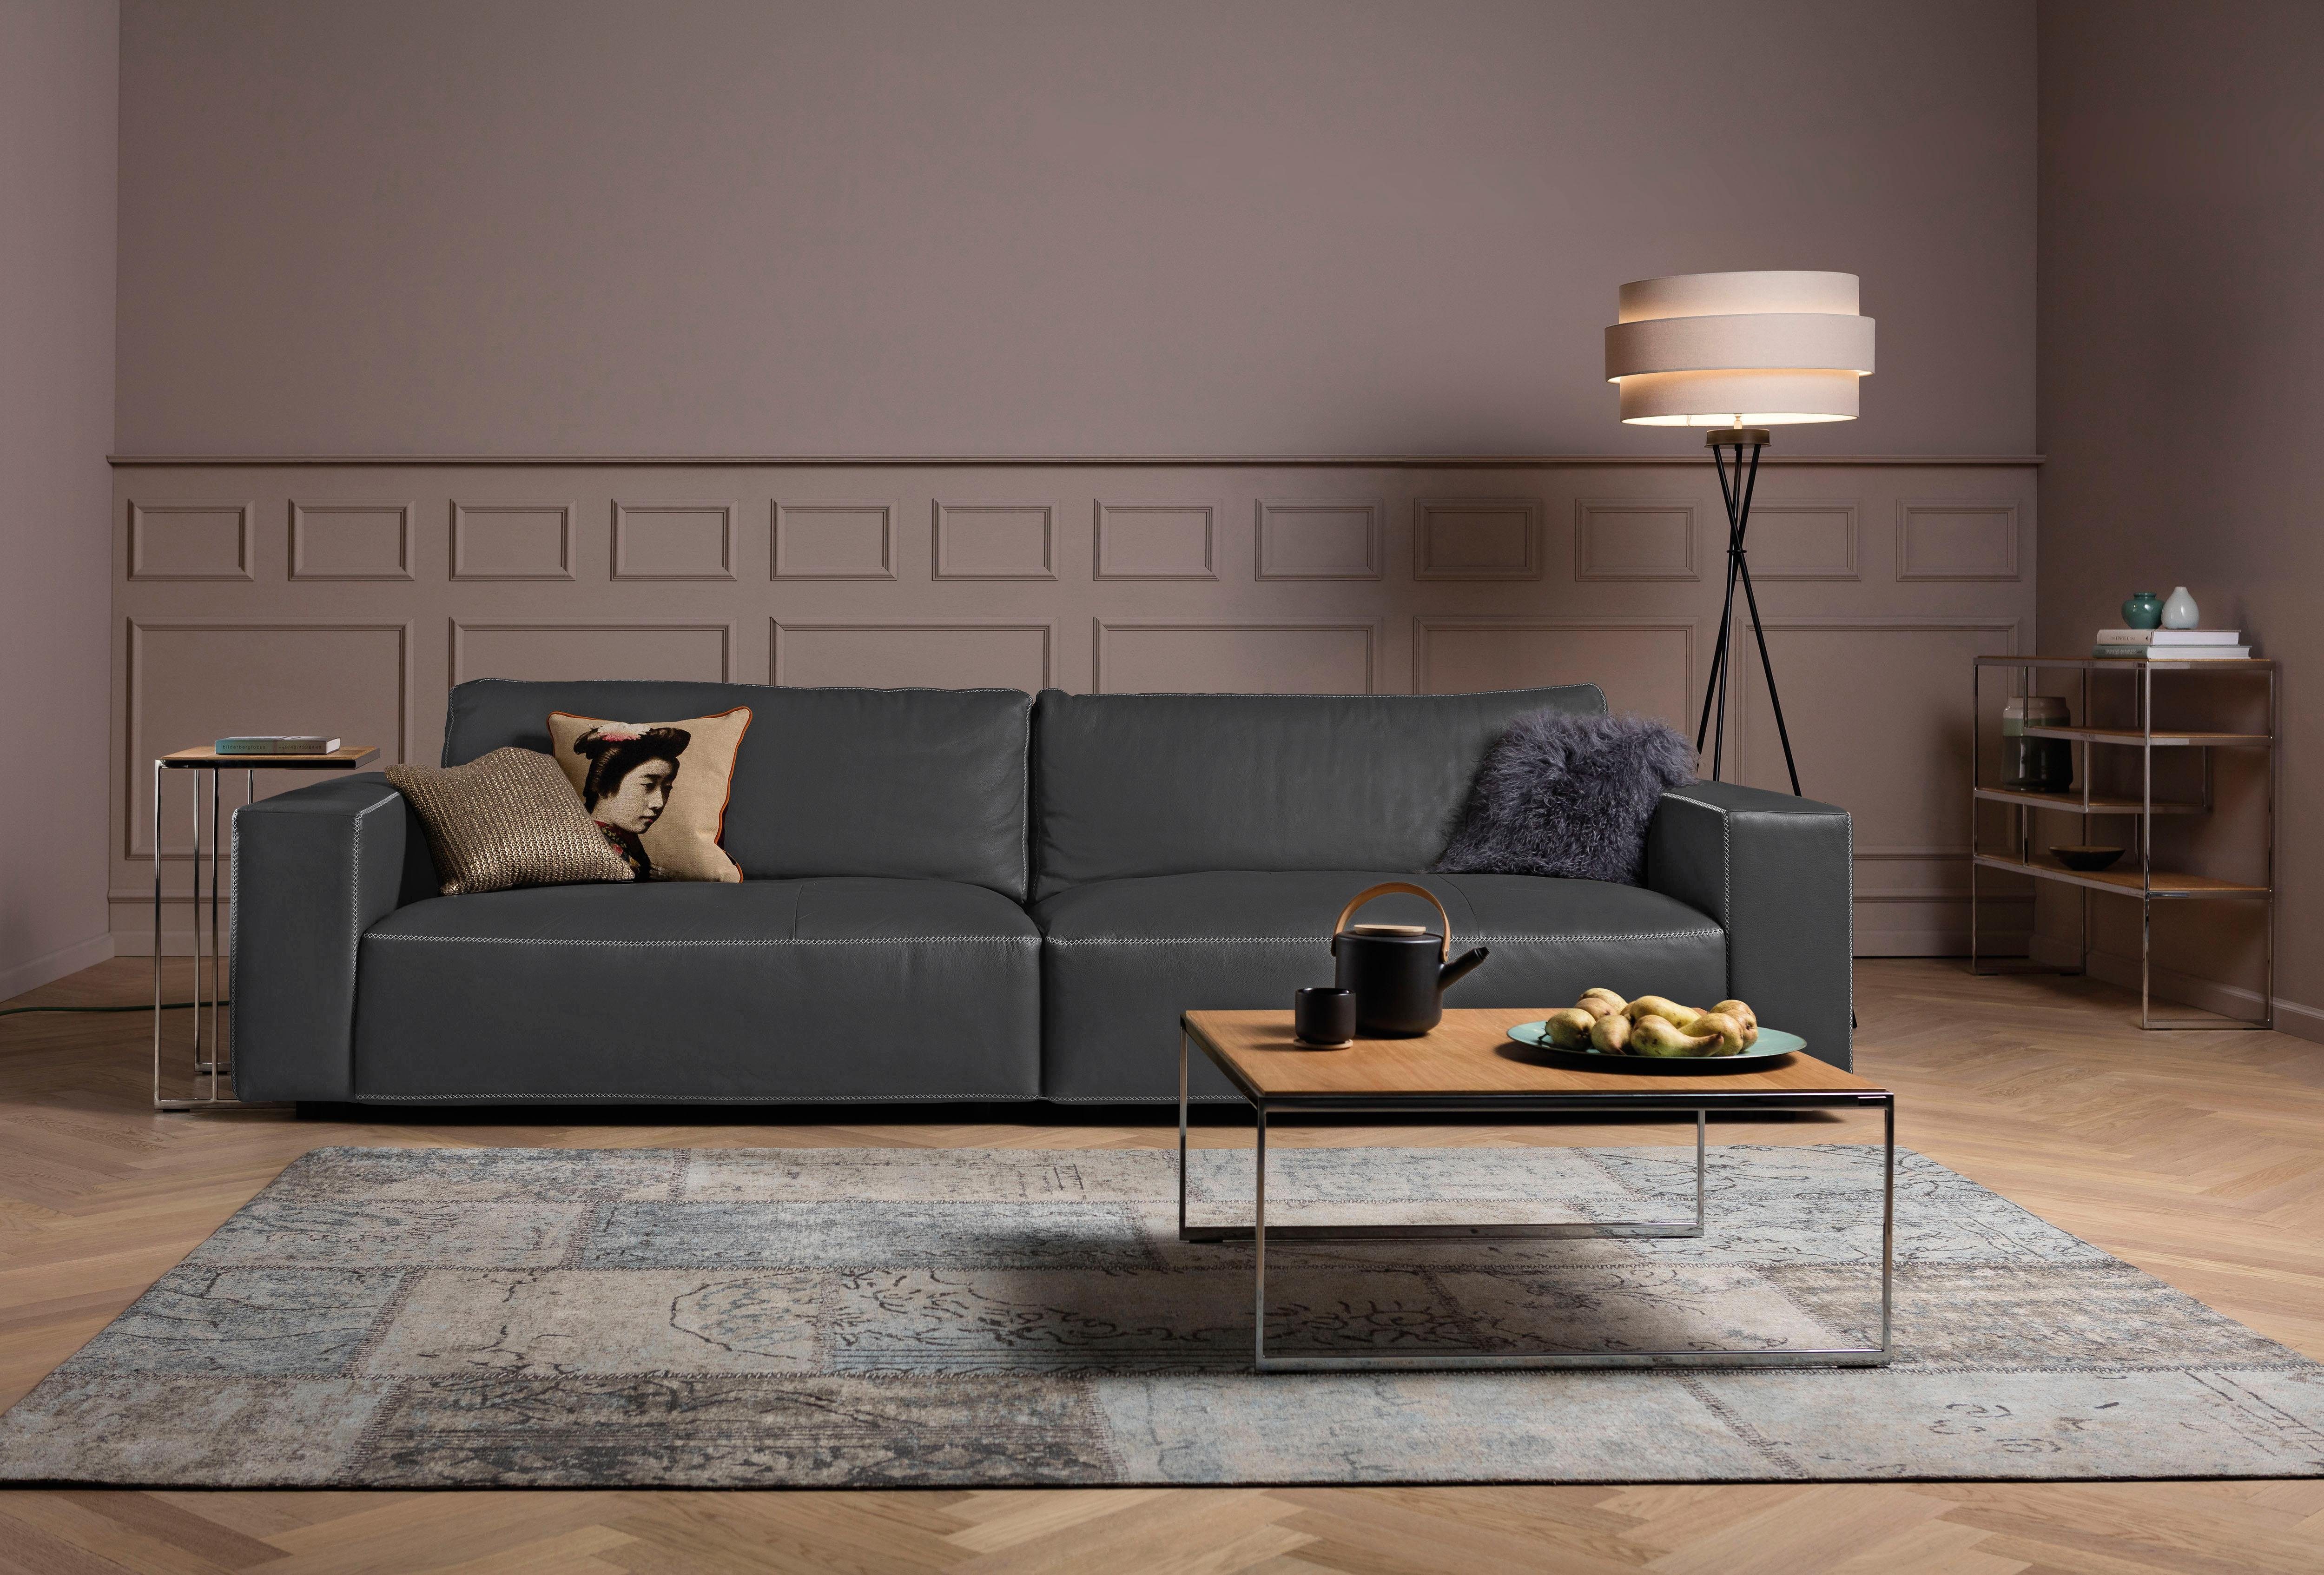 LUCIA, by und M GALLERY branded Big-Sofa Nähten, 4 Musterring 3-Sitzer Qualitäten in vielen unterschiedlichen